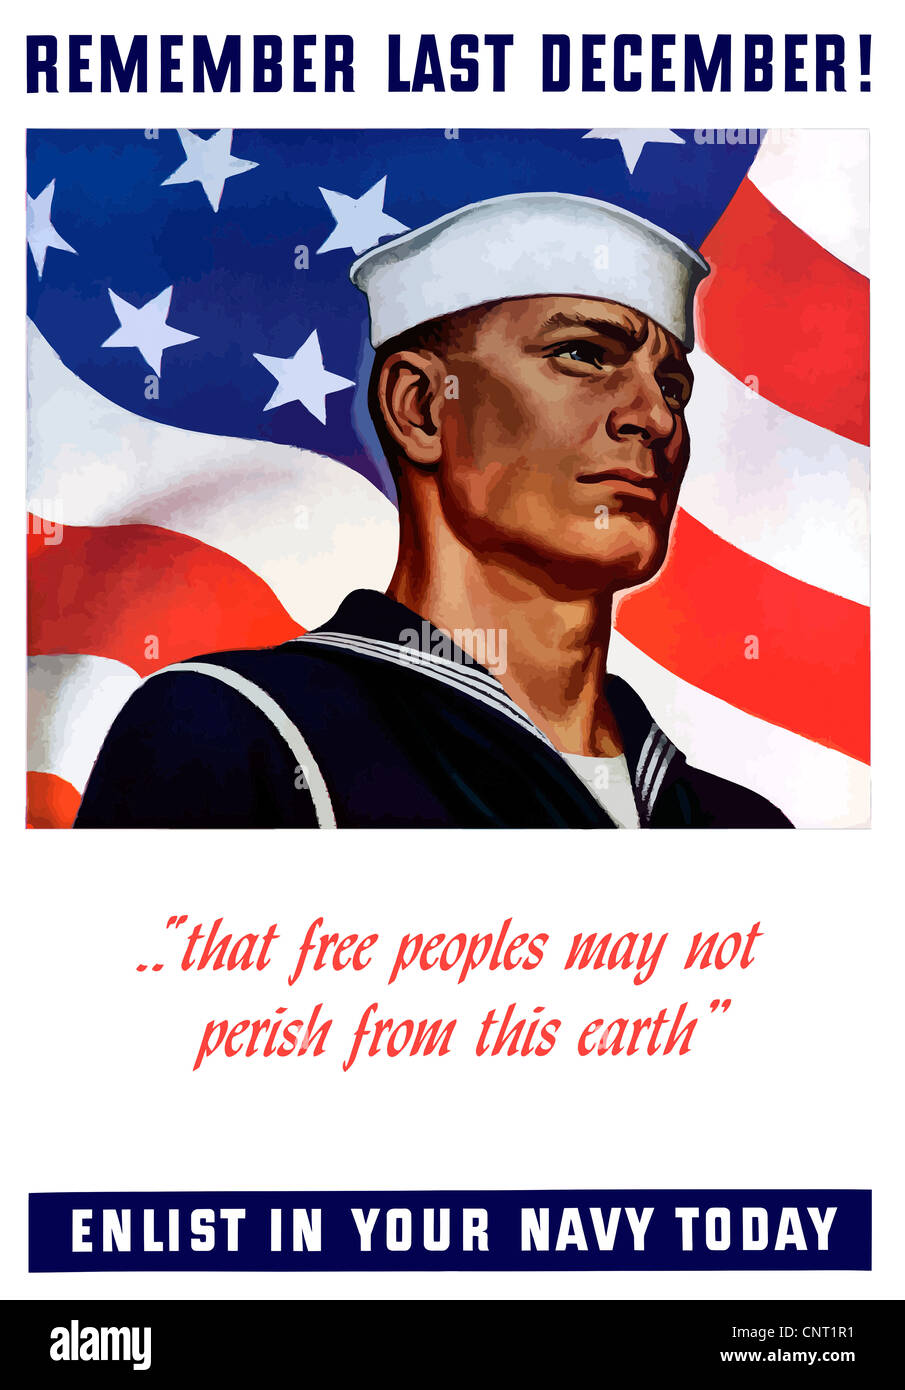 Questa annata II Guerra Mondiale navale poster di reclutamento offre un orgoglioso marinaio americano davanti alla bandiera americana. Foto Stock